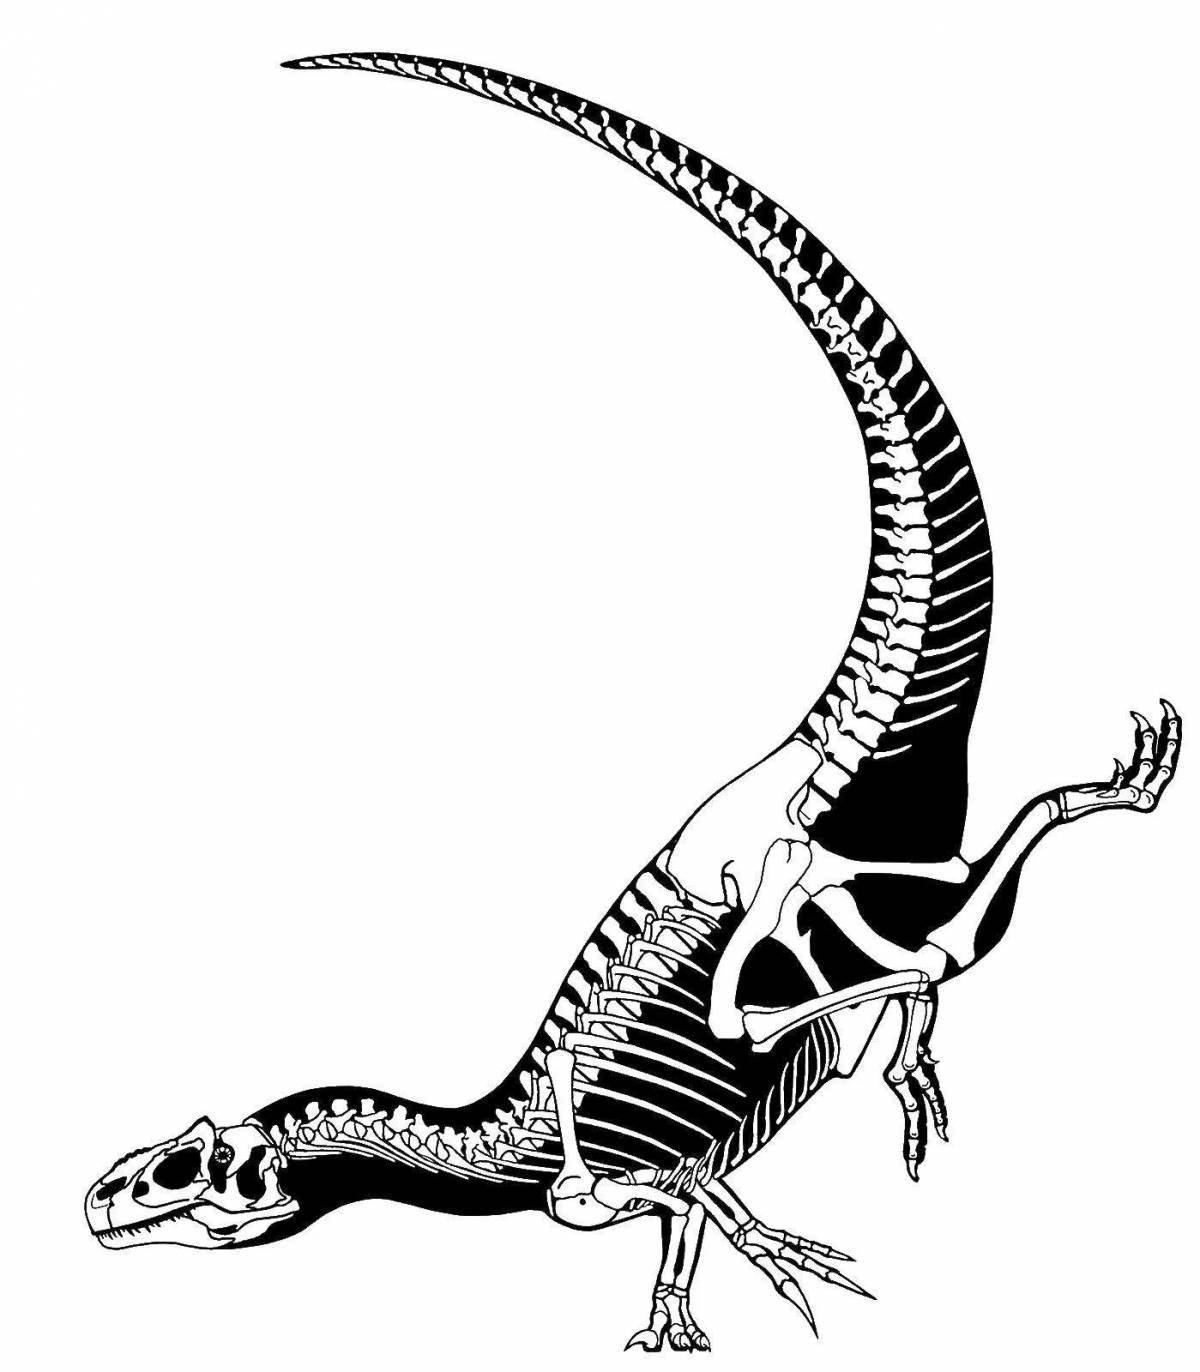 Роскошная раскраска скелета динозавра